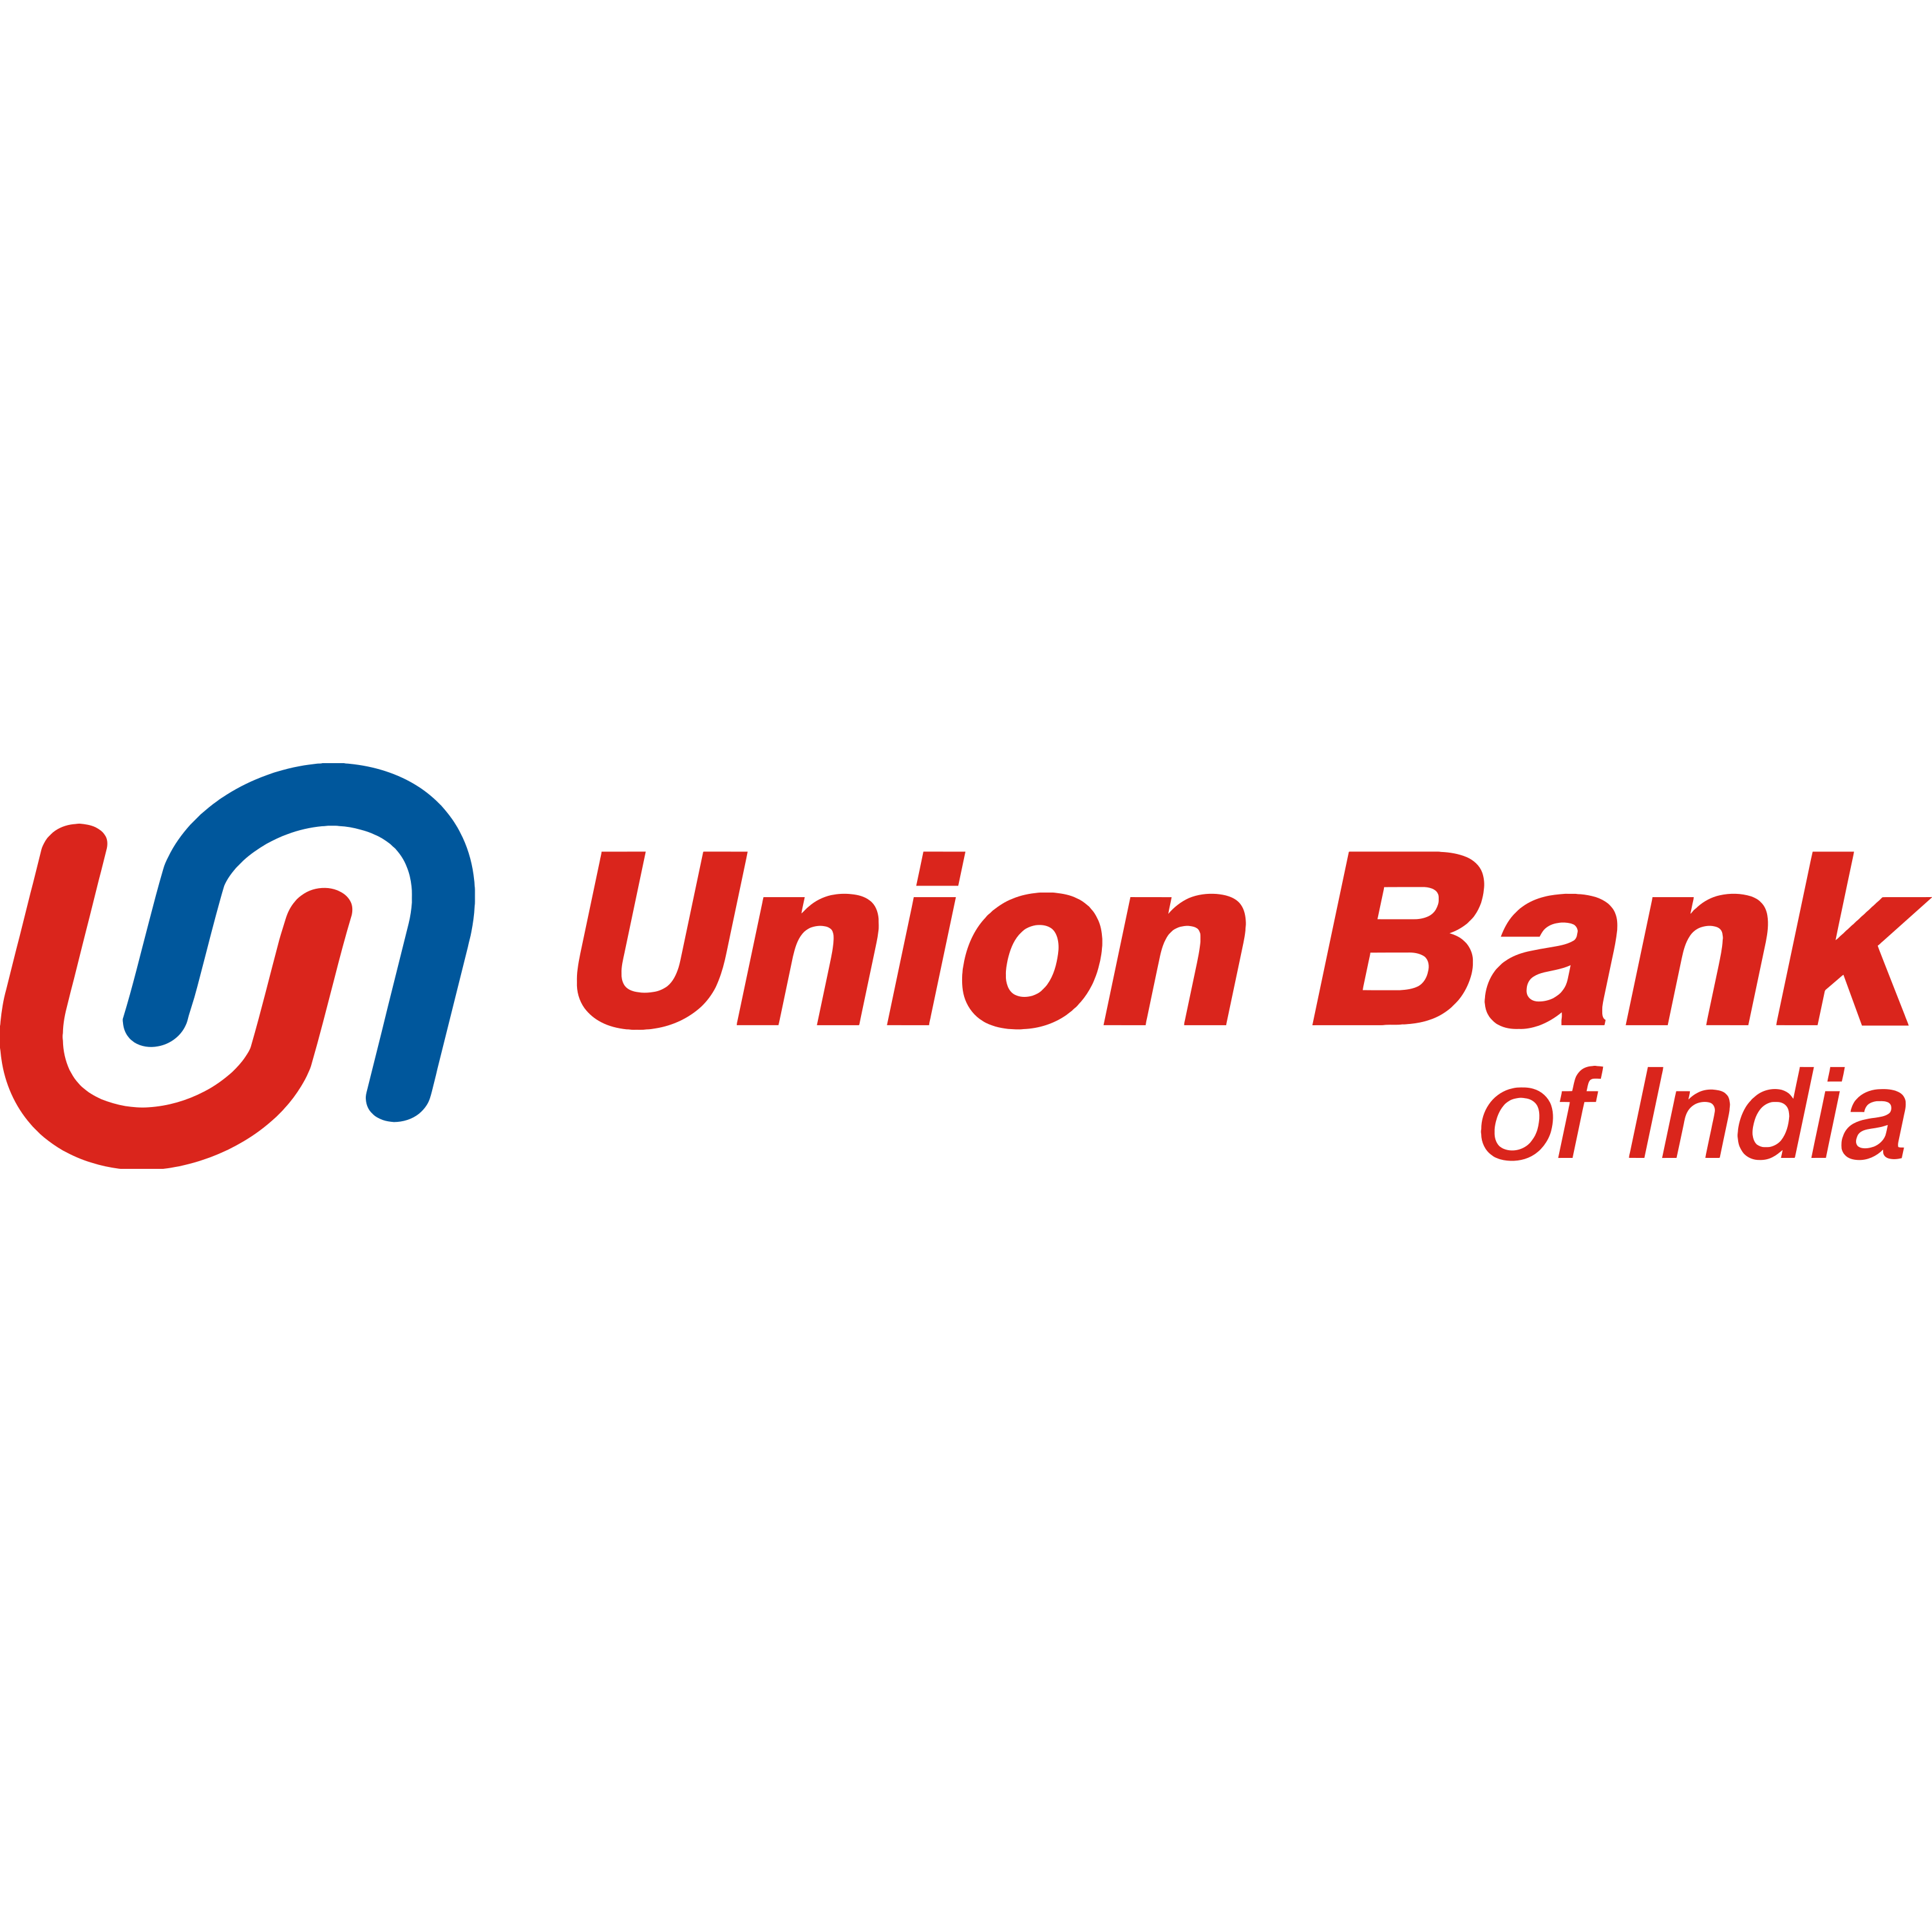 Union Bank Of India Logo Transparent Image